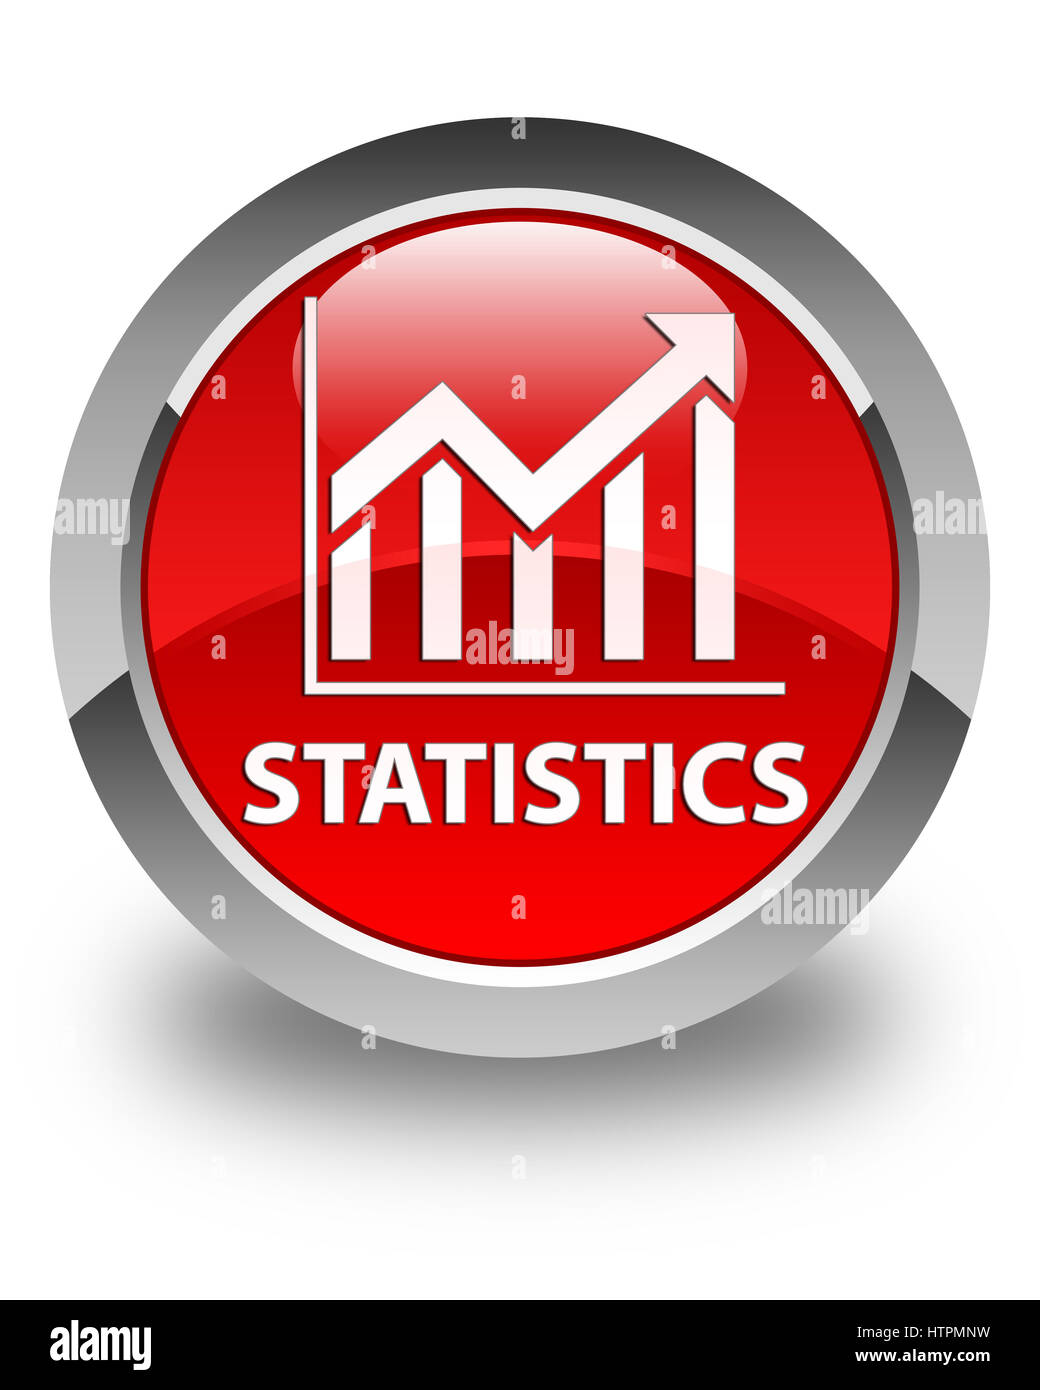 Statistiche isolato sul rosso lucido pulsante rotondo illustrazione astratta Foto Stock